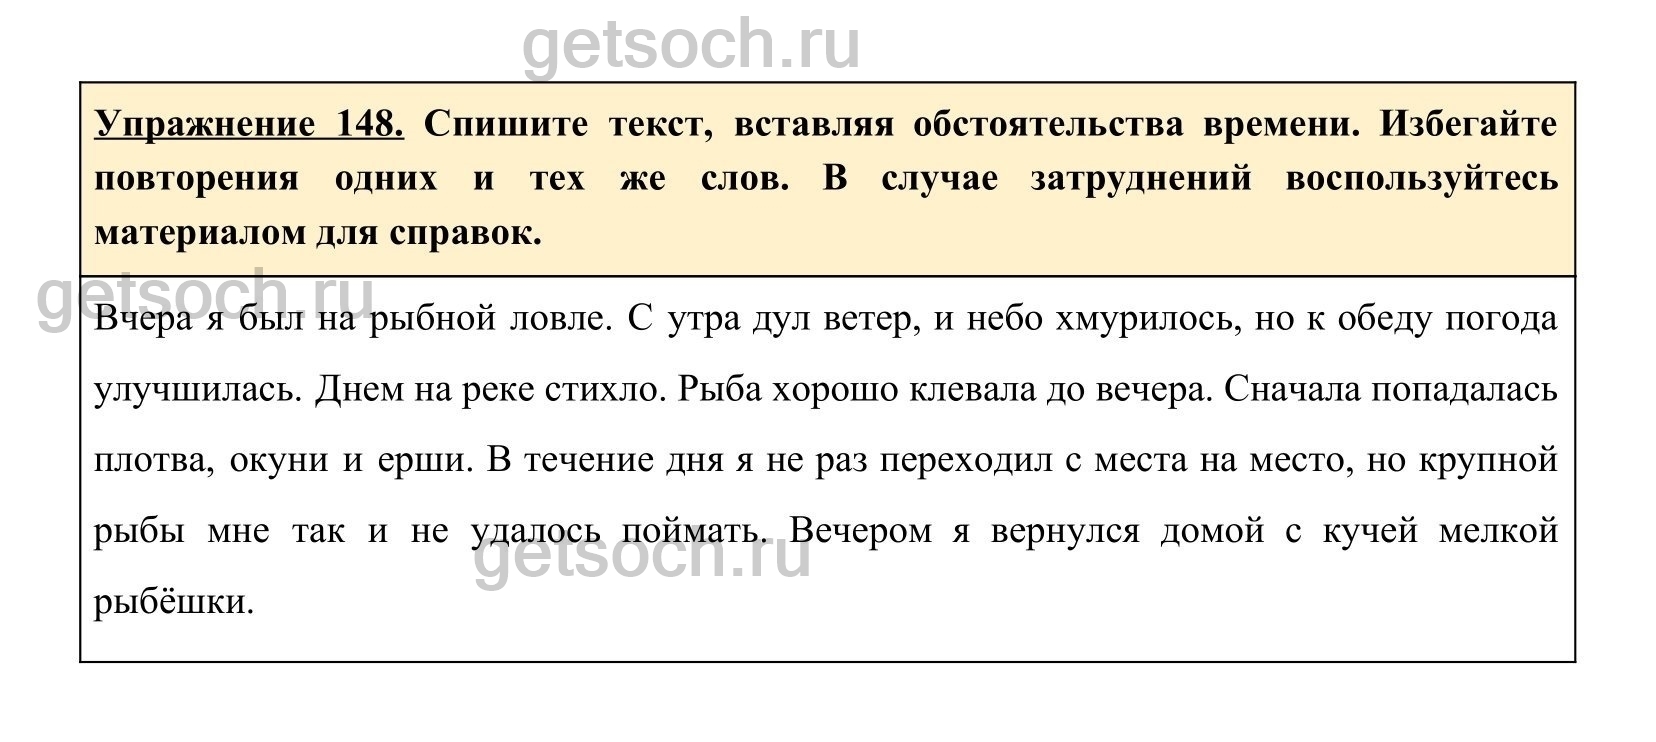 Русский язык 8 класс номер 445. Упражнение 148 по русскому языку 2 класс. Русский язык восьмой класс страница 76 упражнение 148. Какое есть прилагательное в русском языке на странице 85 упражнение 148.